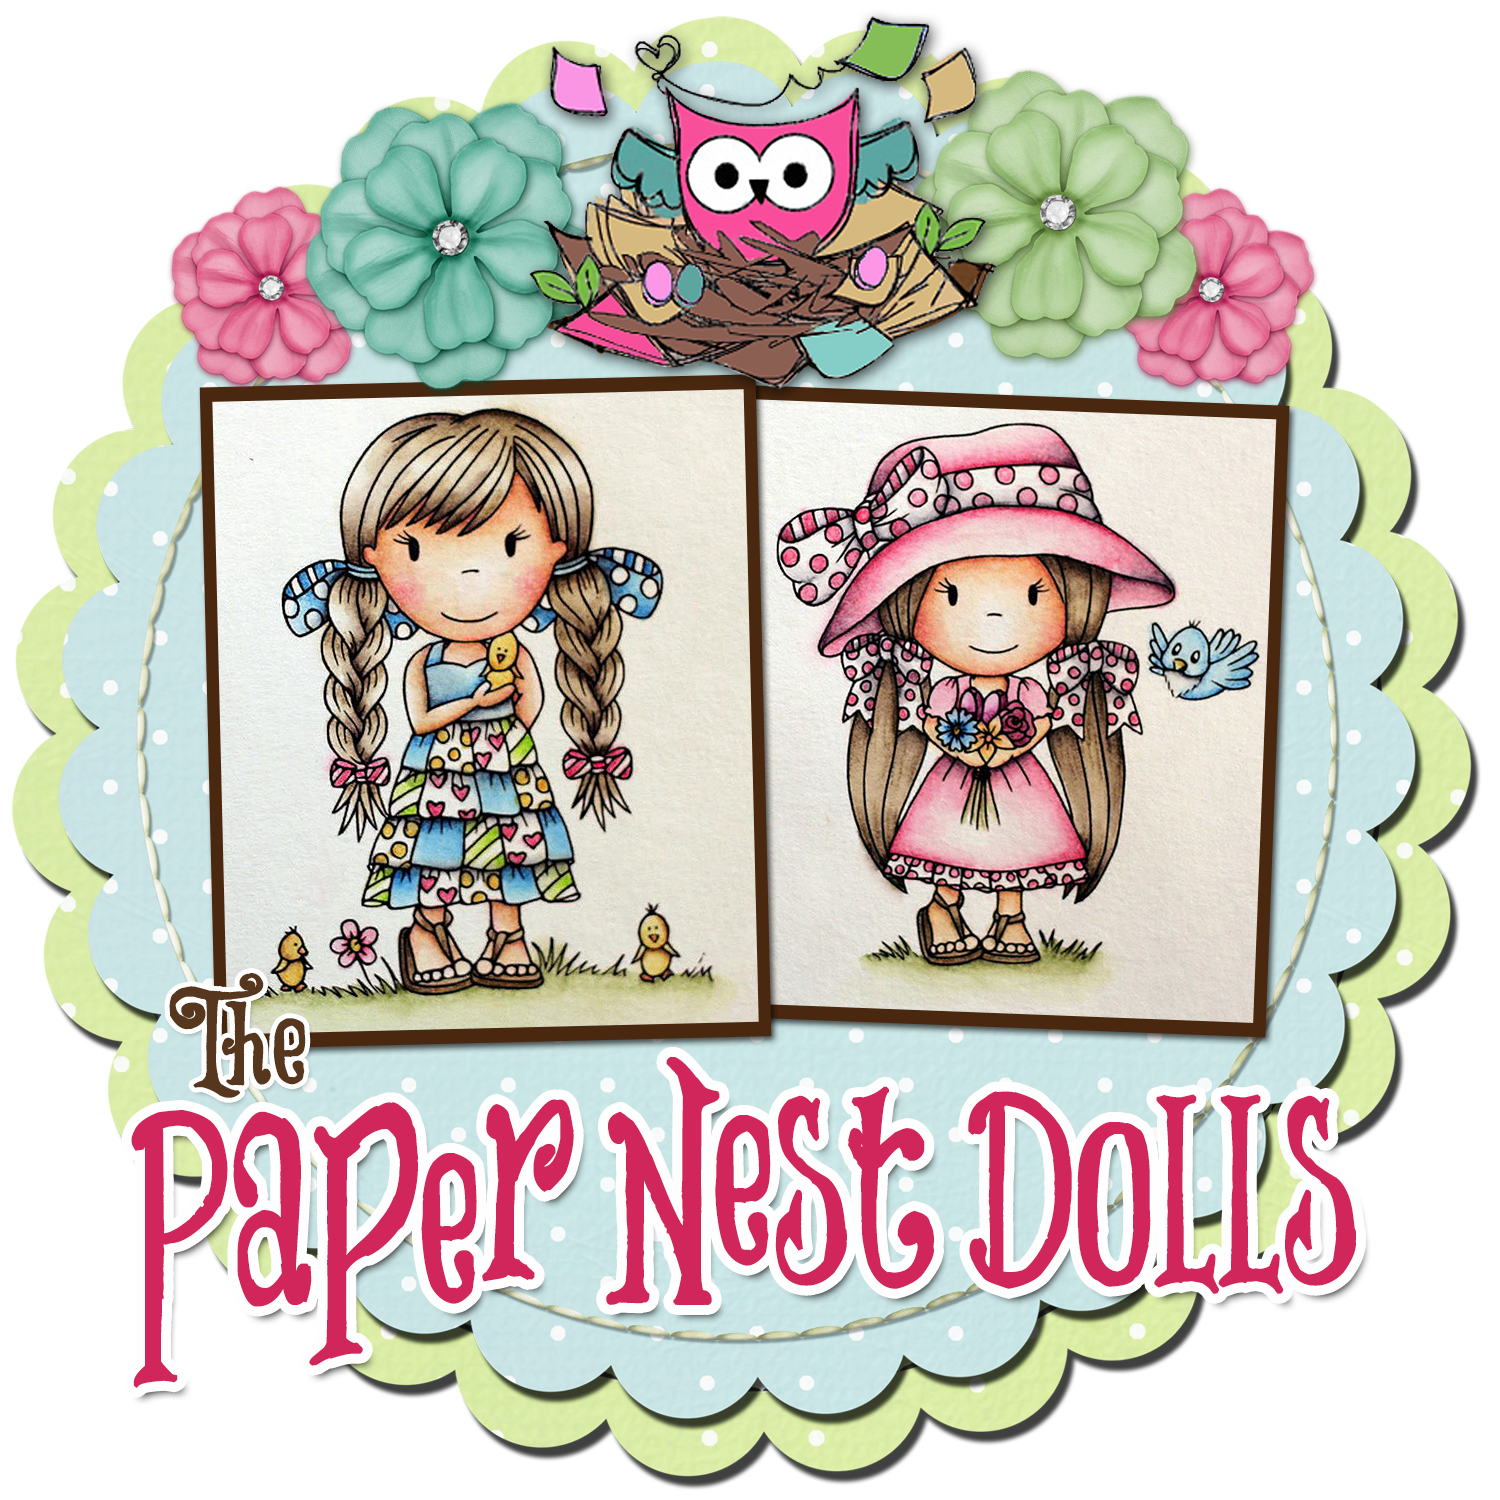 Ex-DT member of Paper Nest Dolls Stamp